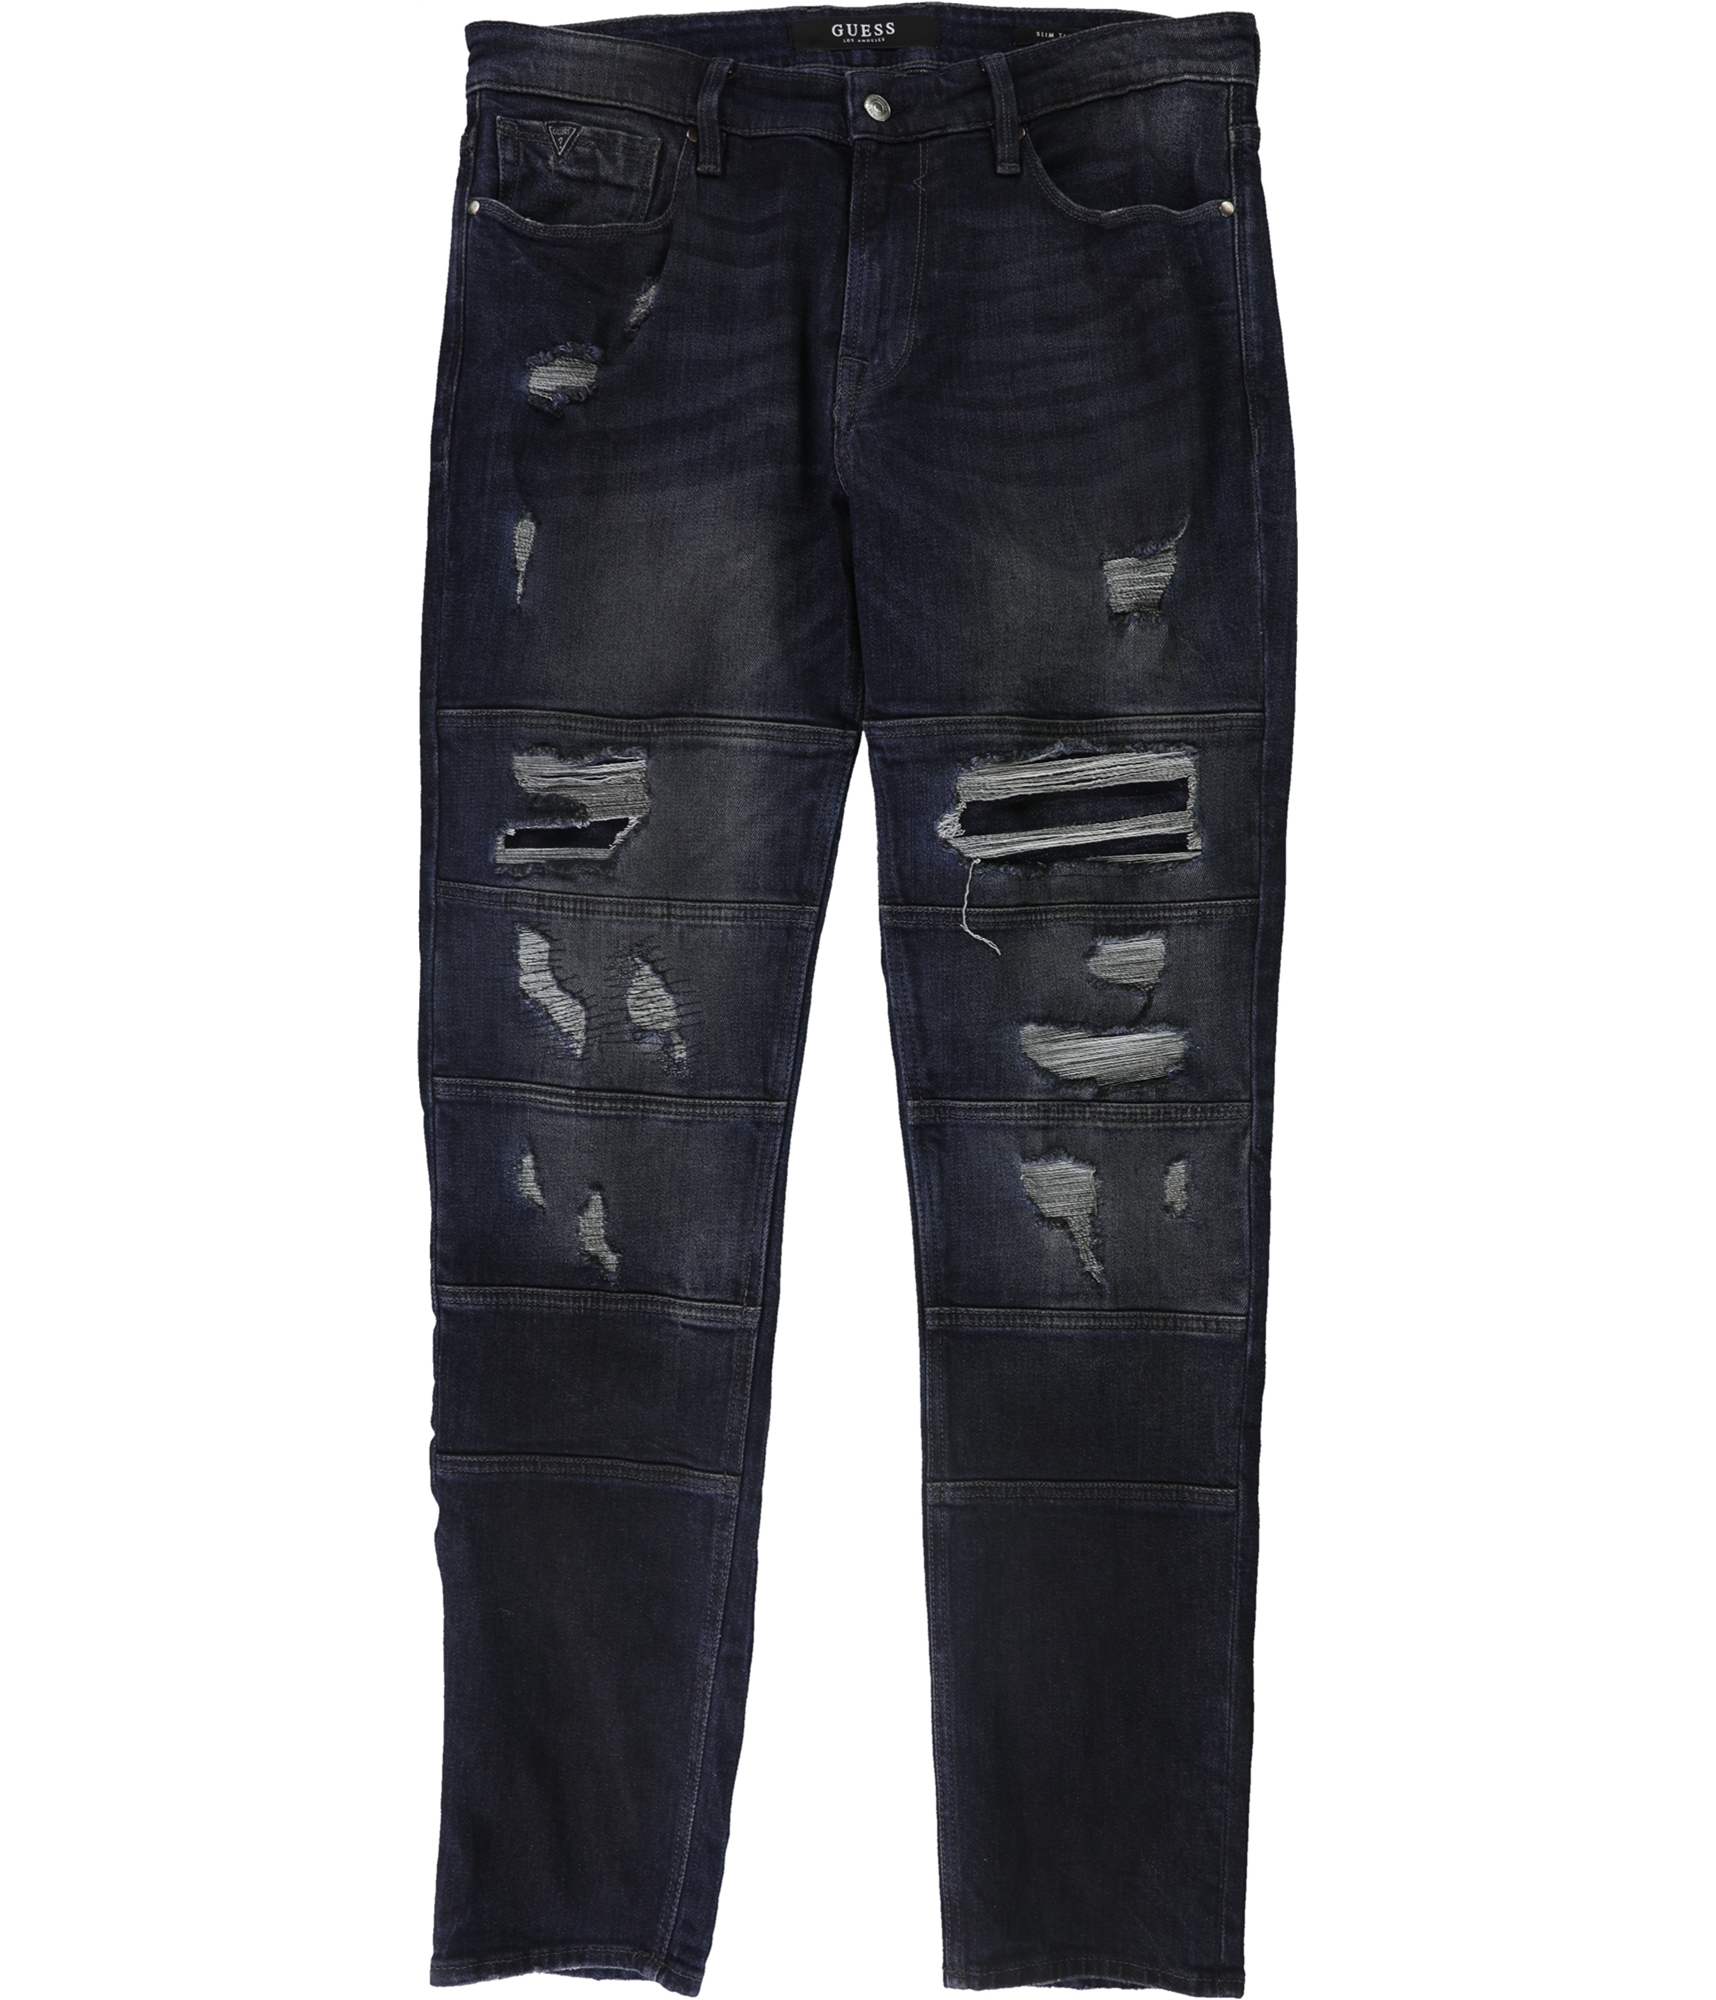 Guess MID RISE SLIM - Slim fit jeans - schwarz/black - Zalando.de